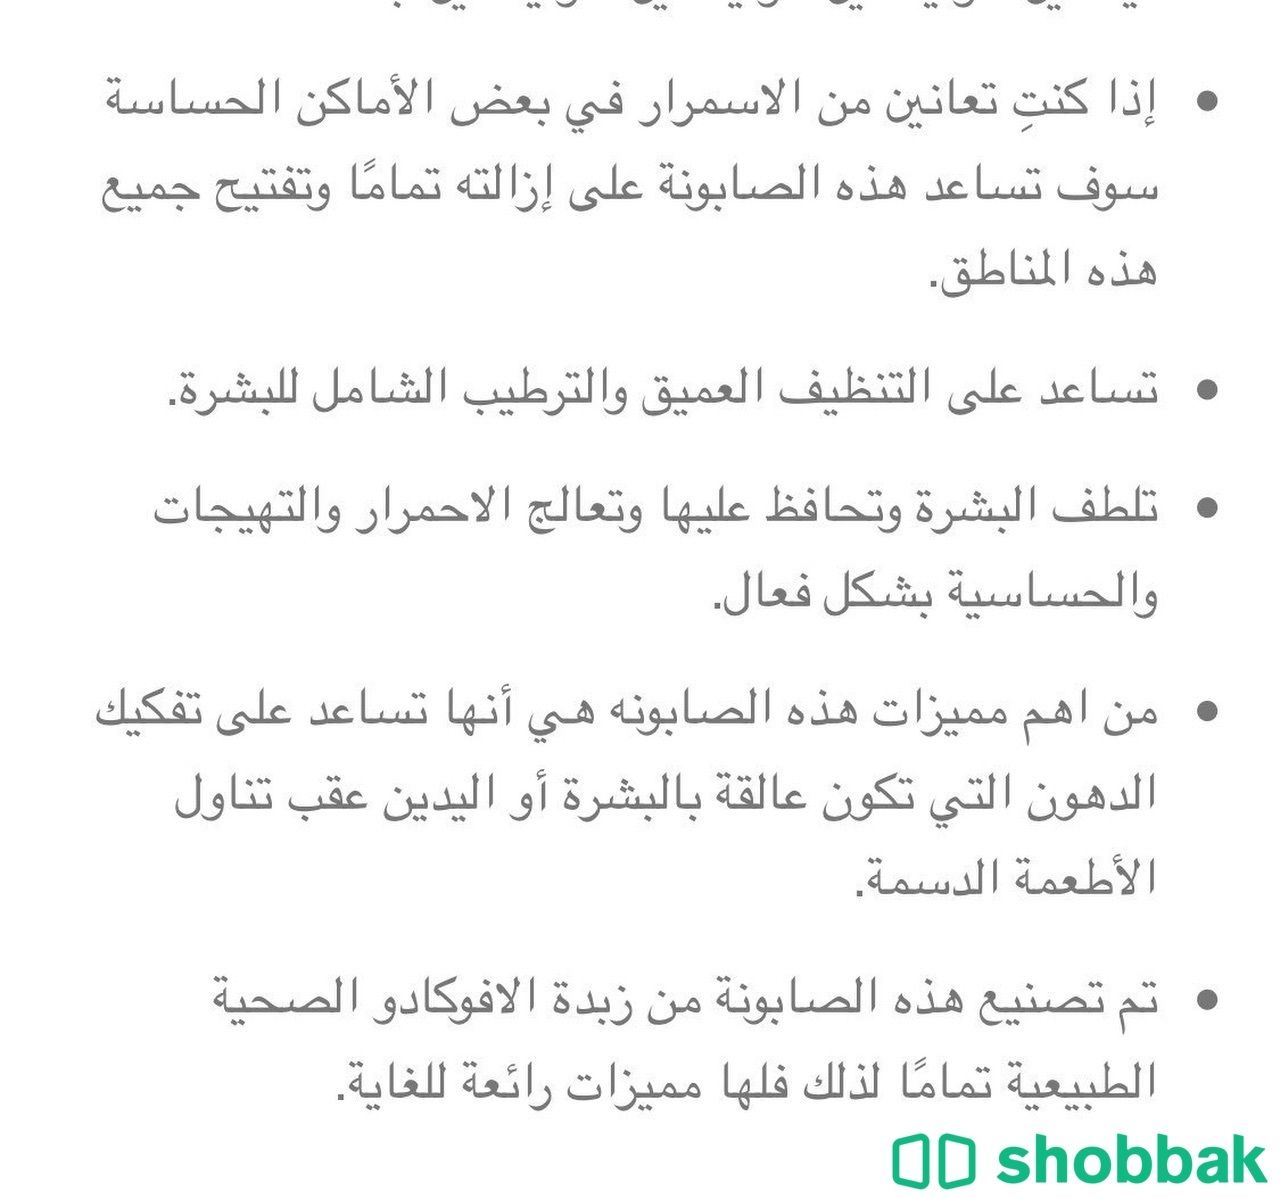 صابونة الافوكادو العضوية Shobbak Saudi Arabia